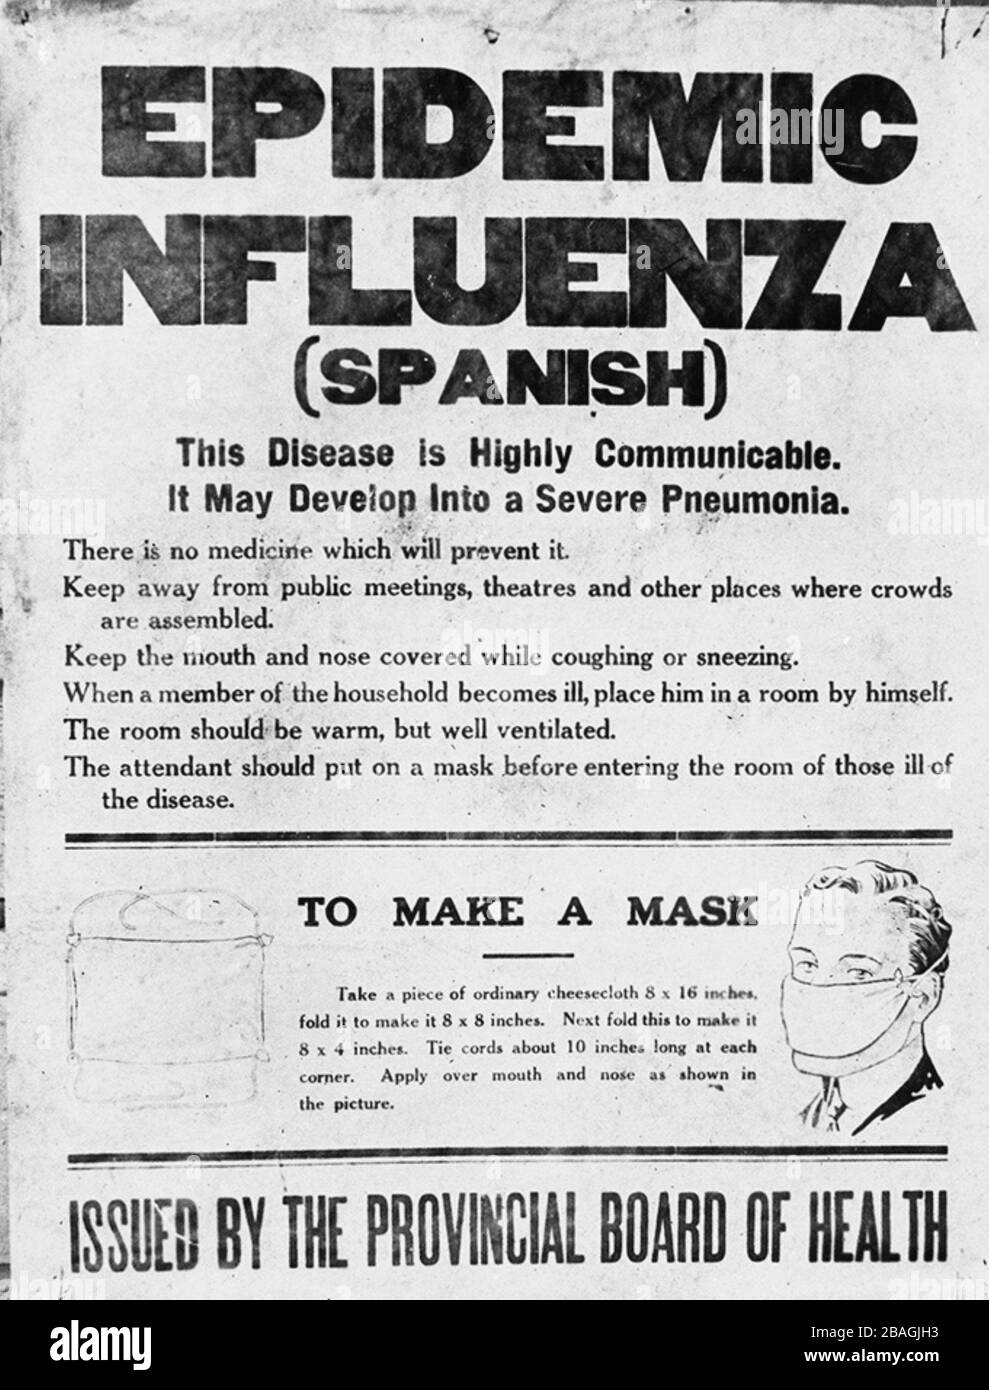 Affiche de la grippe espagnole. Affiche publiée par la Commission provinciale de la santé de l'Alberta, qui alerte le public à l'épidémie de grippe de 1918. L'affiche donne des informations sur la grippe espagnole et des instructions sur la façon de faire un masque. Banque D'Images